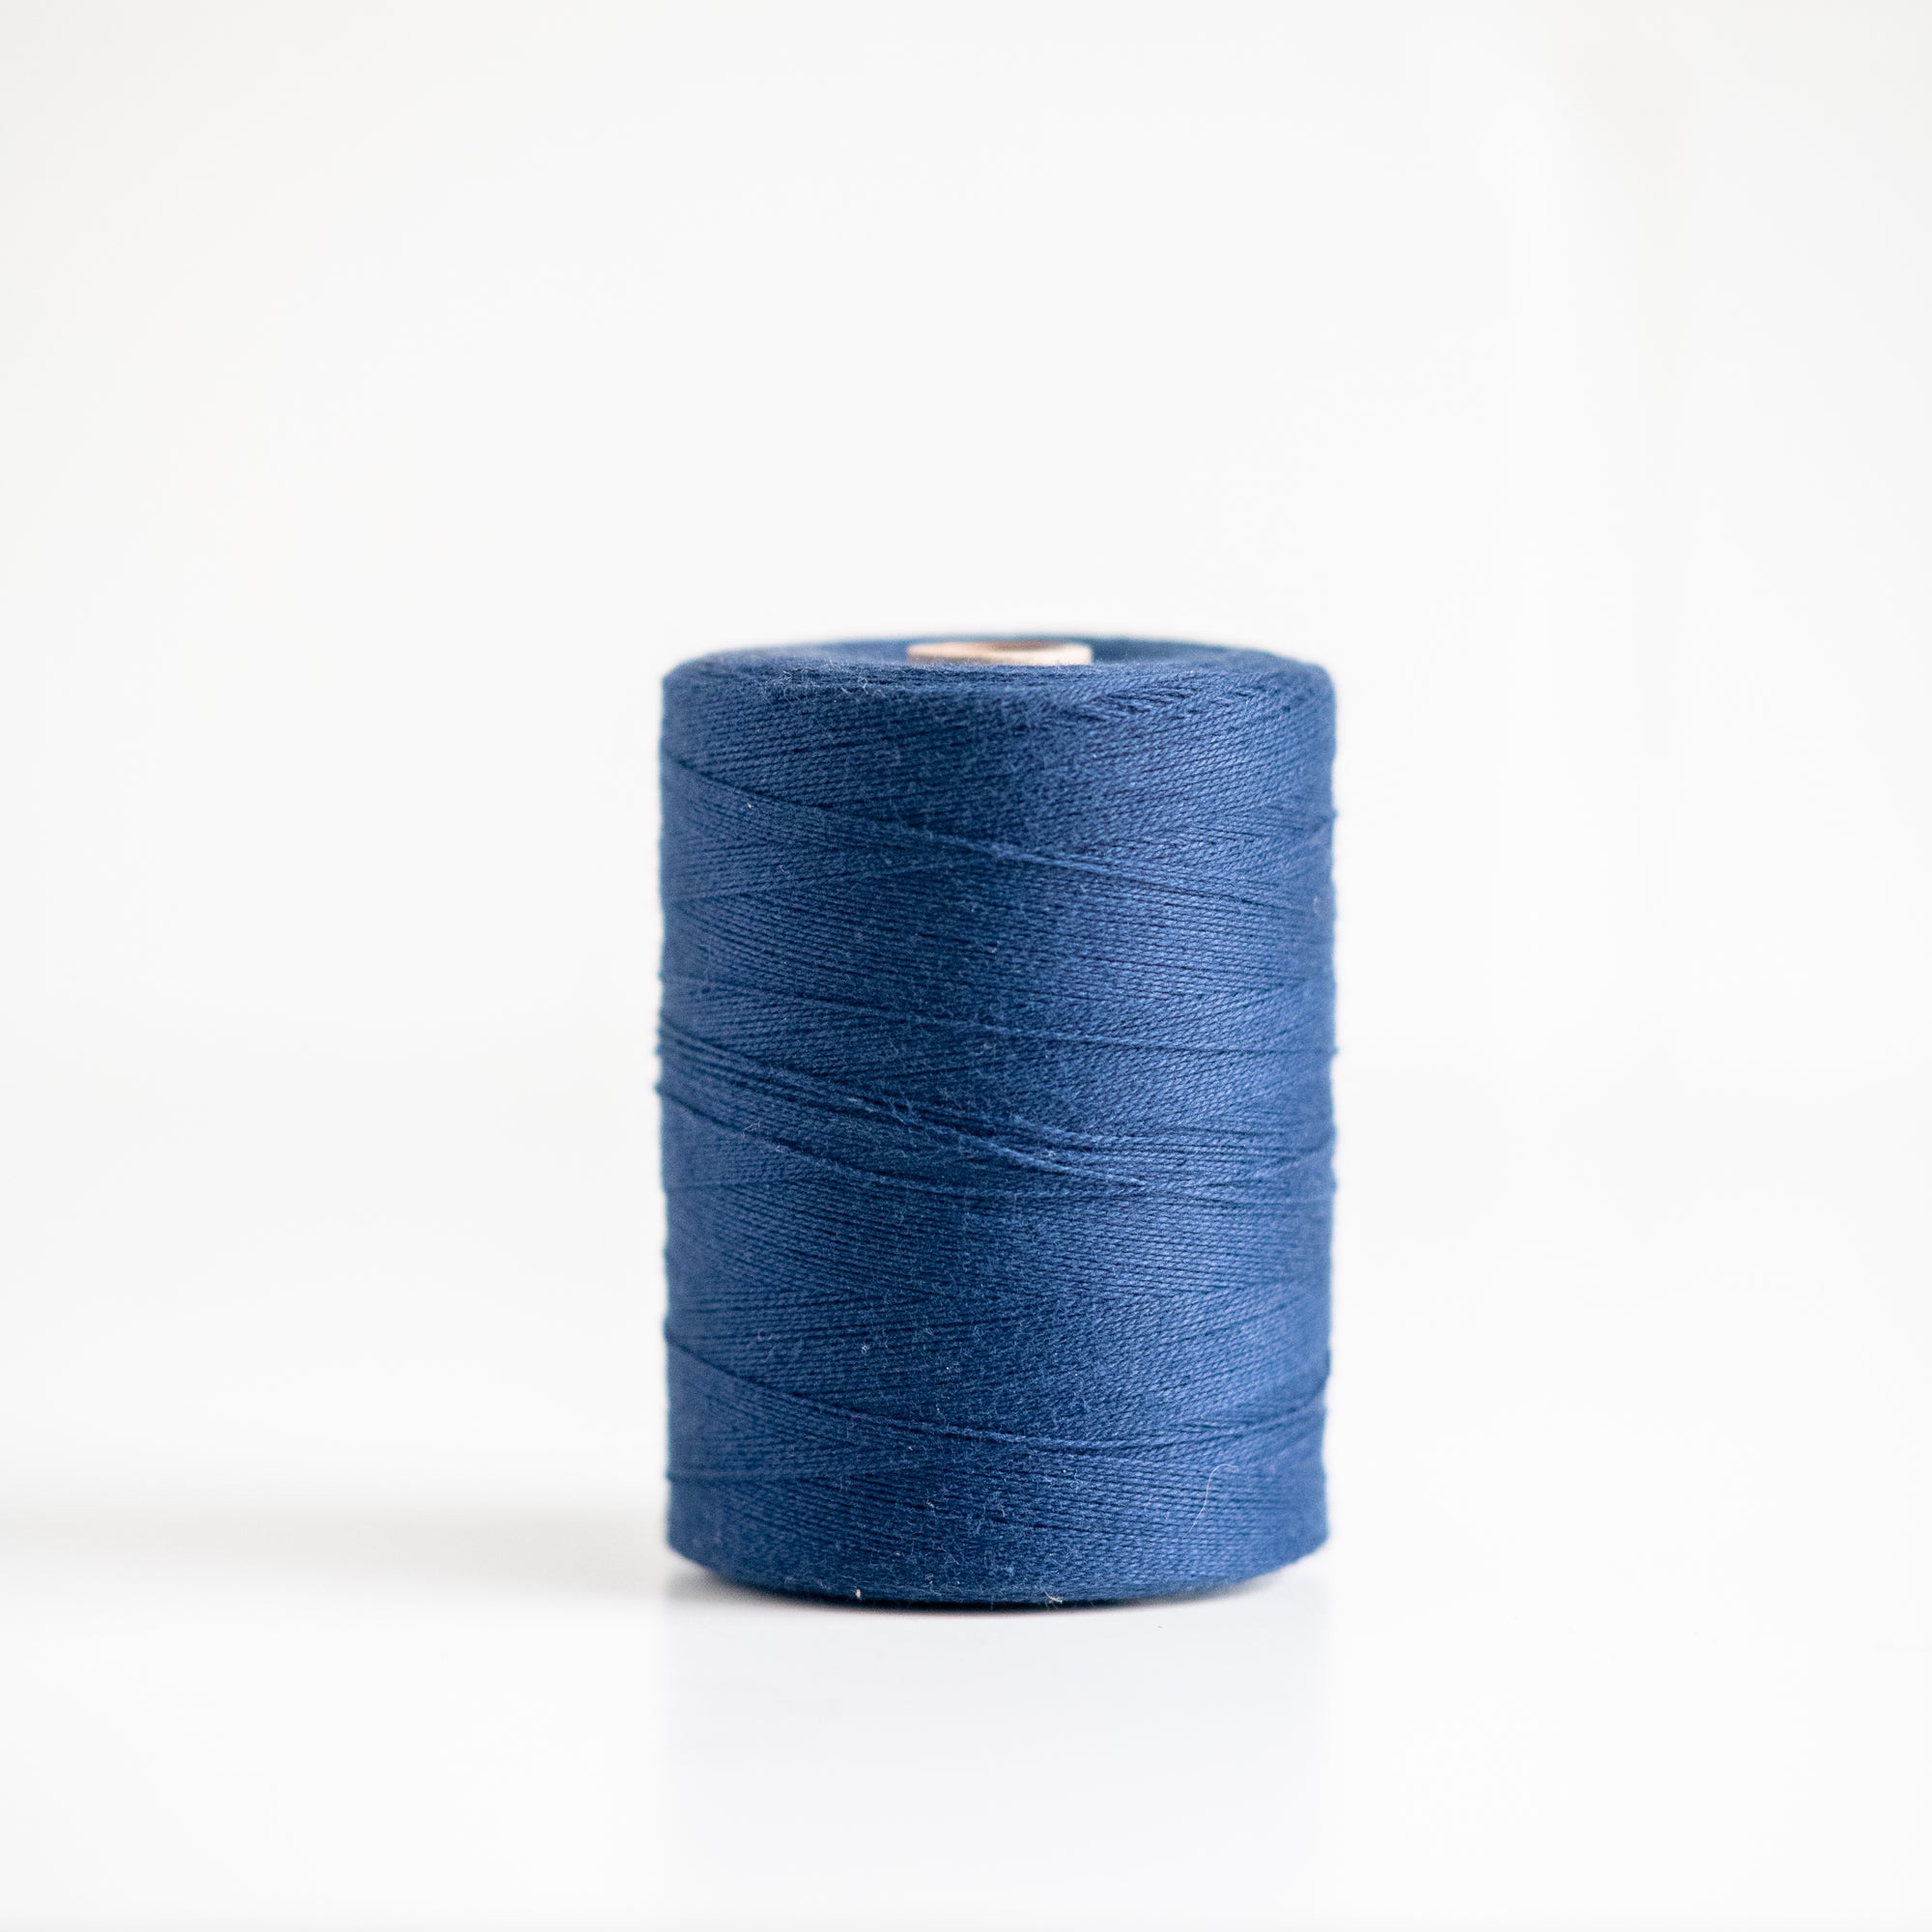 2/16 Cotton - Maurice Brassard - GATHER Textiles Inc.